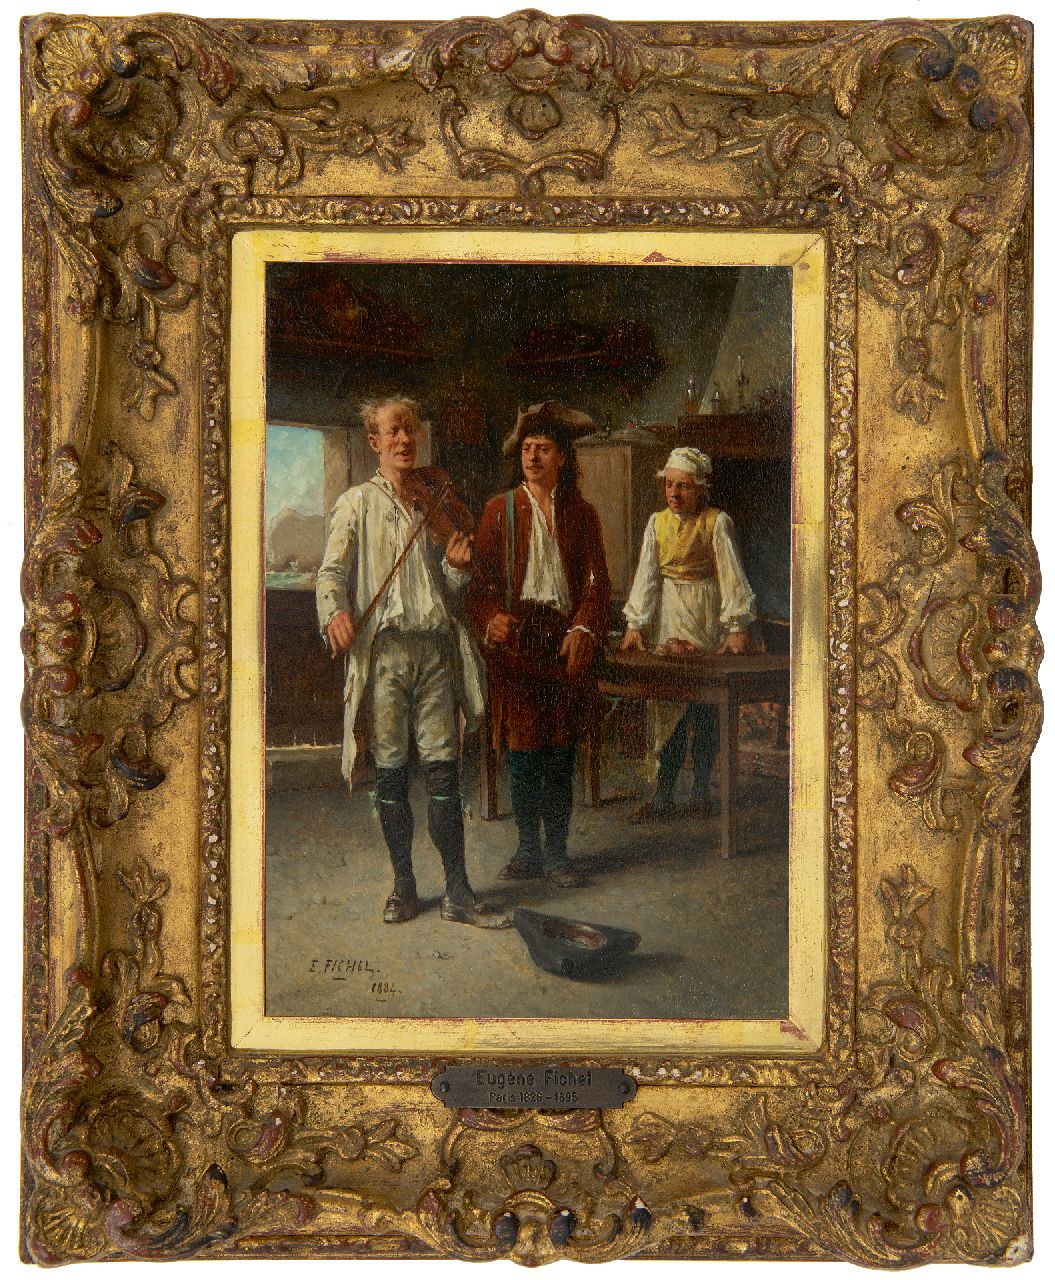 Fichel B.E.  | Benjamin 'Eugène' Fichel | Schilderijen te koop aangeboden | De vioolspeler, olieverf op paneel 22,0 x 15,8 cm, gesigneerd linksonder en gedateerd 1884